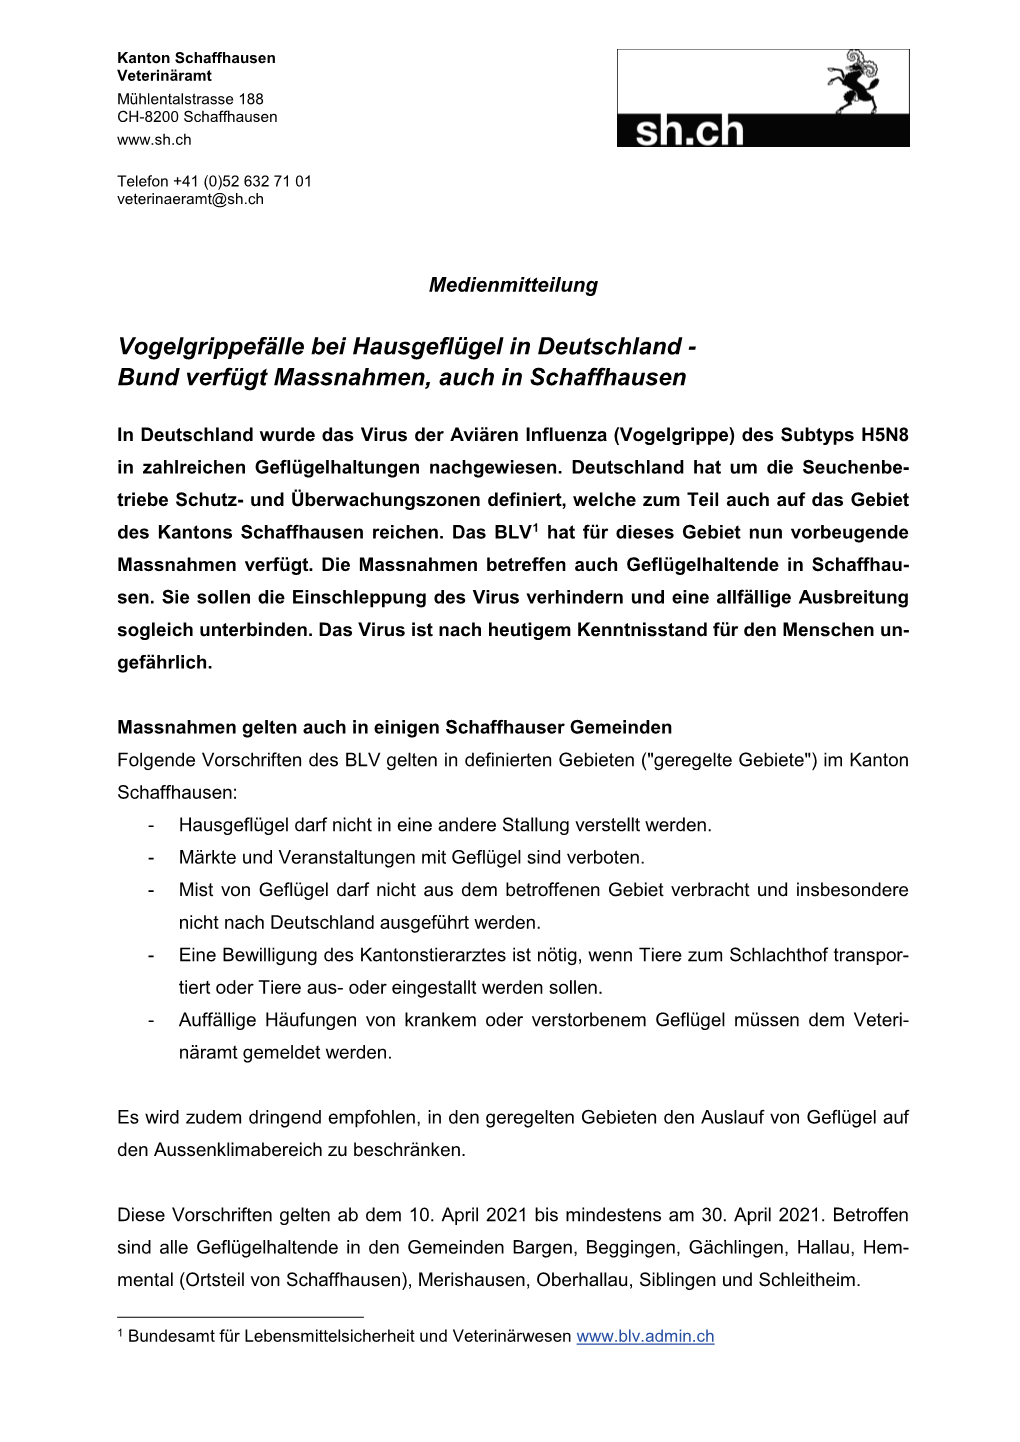 Vogelgrippefälle Bei Hausgeflügel in Deutschland - Bund Verfügt Massnahmen, Auch in Schaffhausen